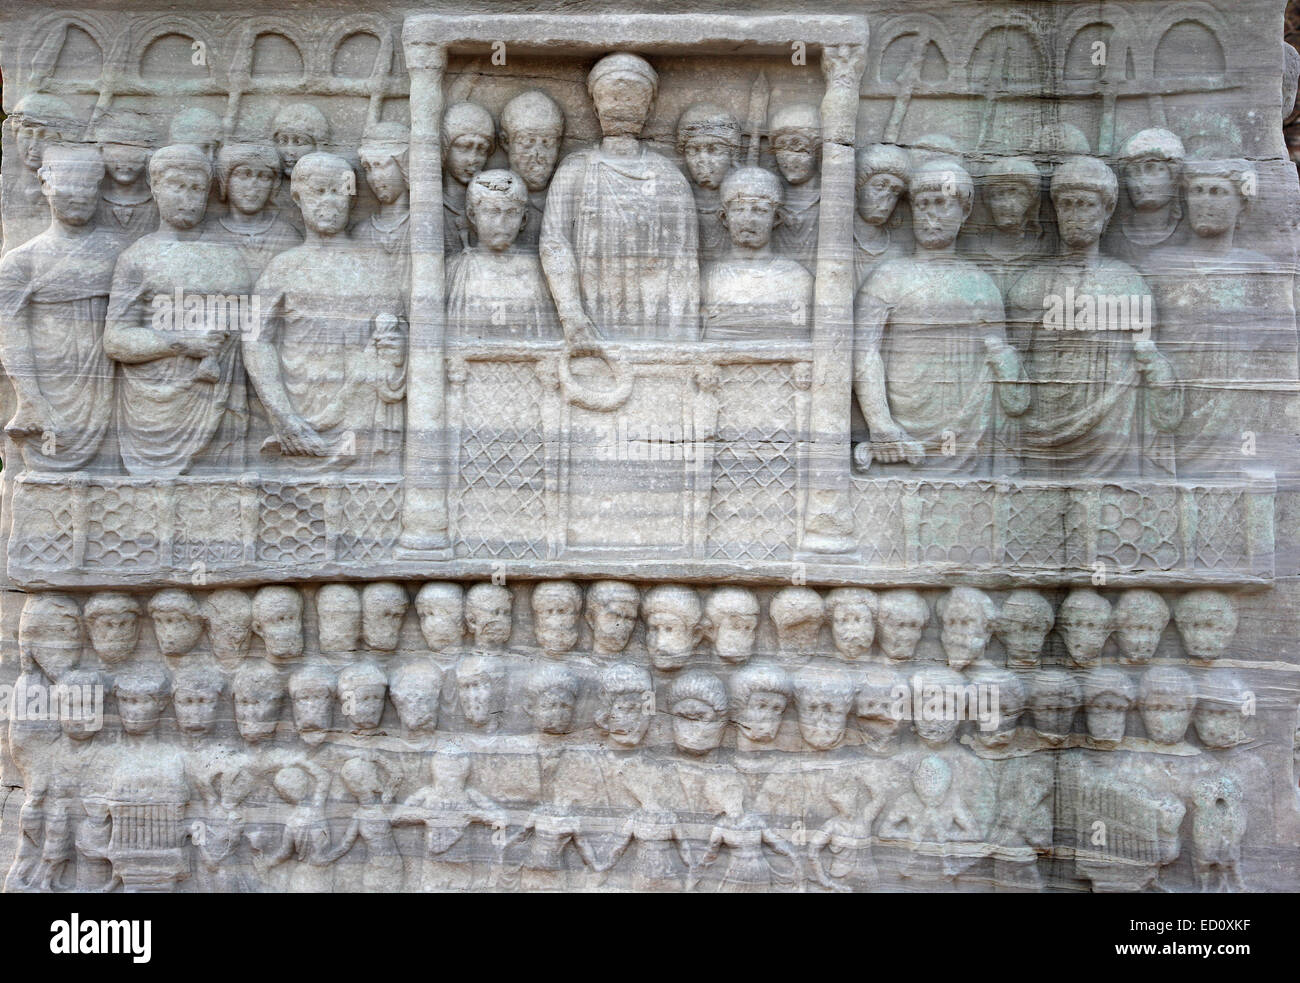 Uno dei bassorilievi sul piedistallo di marmo dell'obelisco di Teodosio, all'Ippodromo di Istanbul, Turchia. Foto Stock